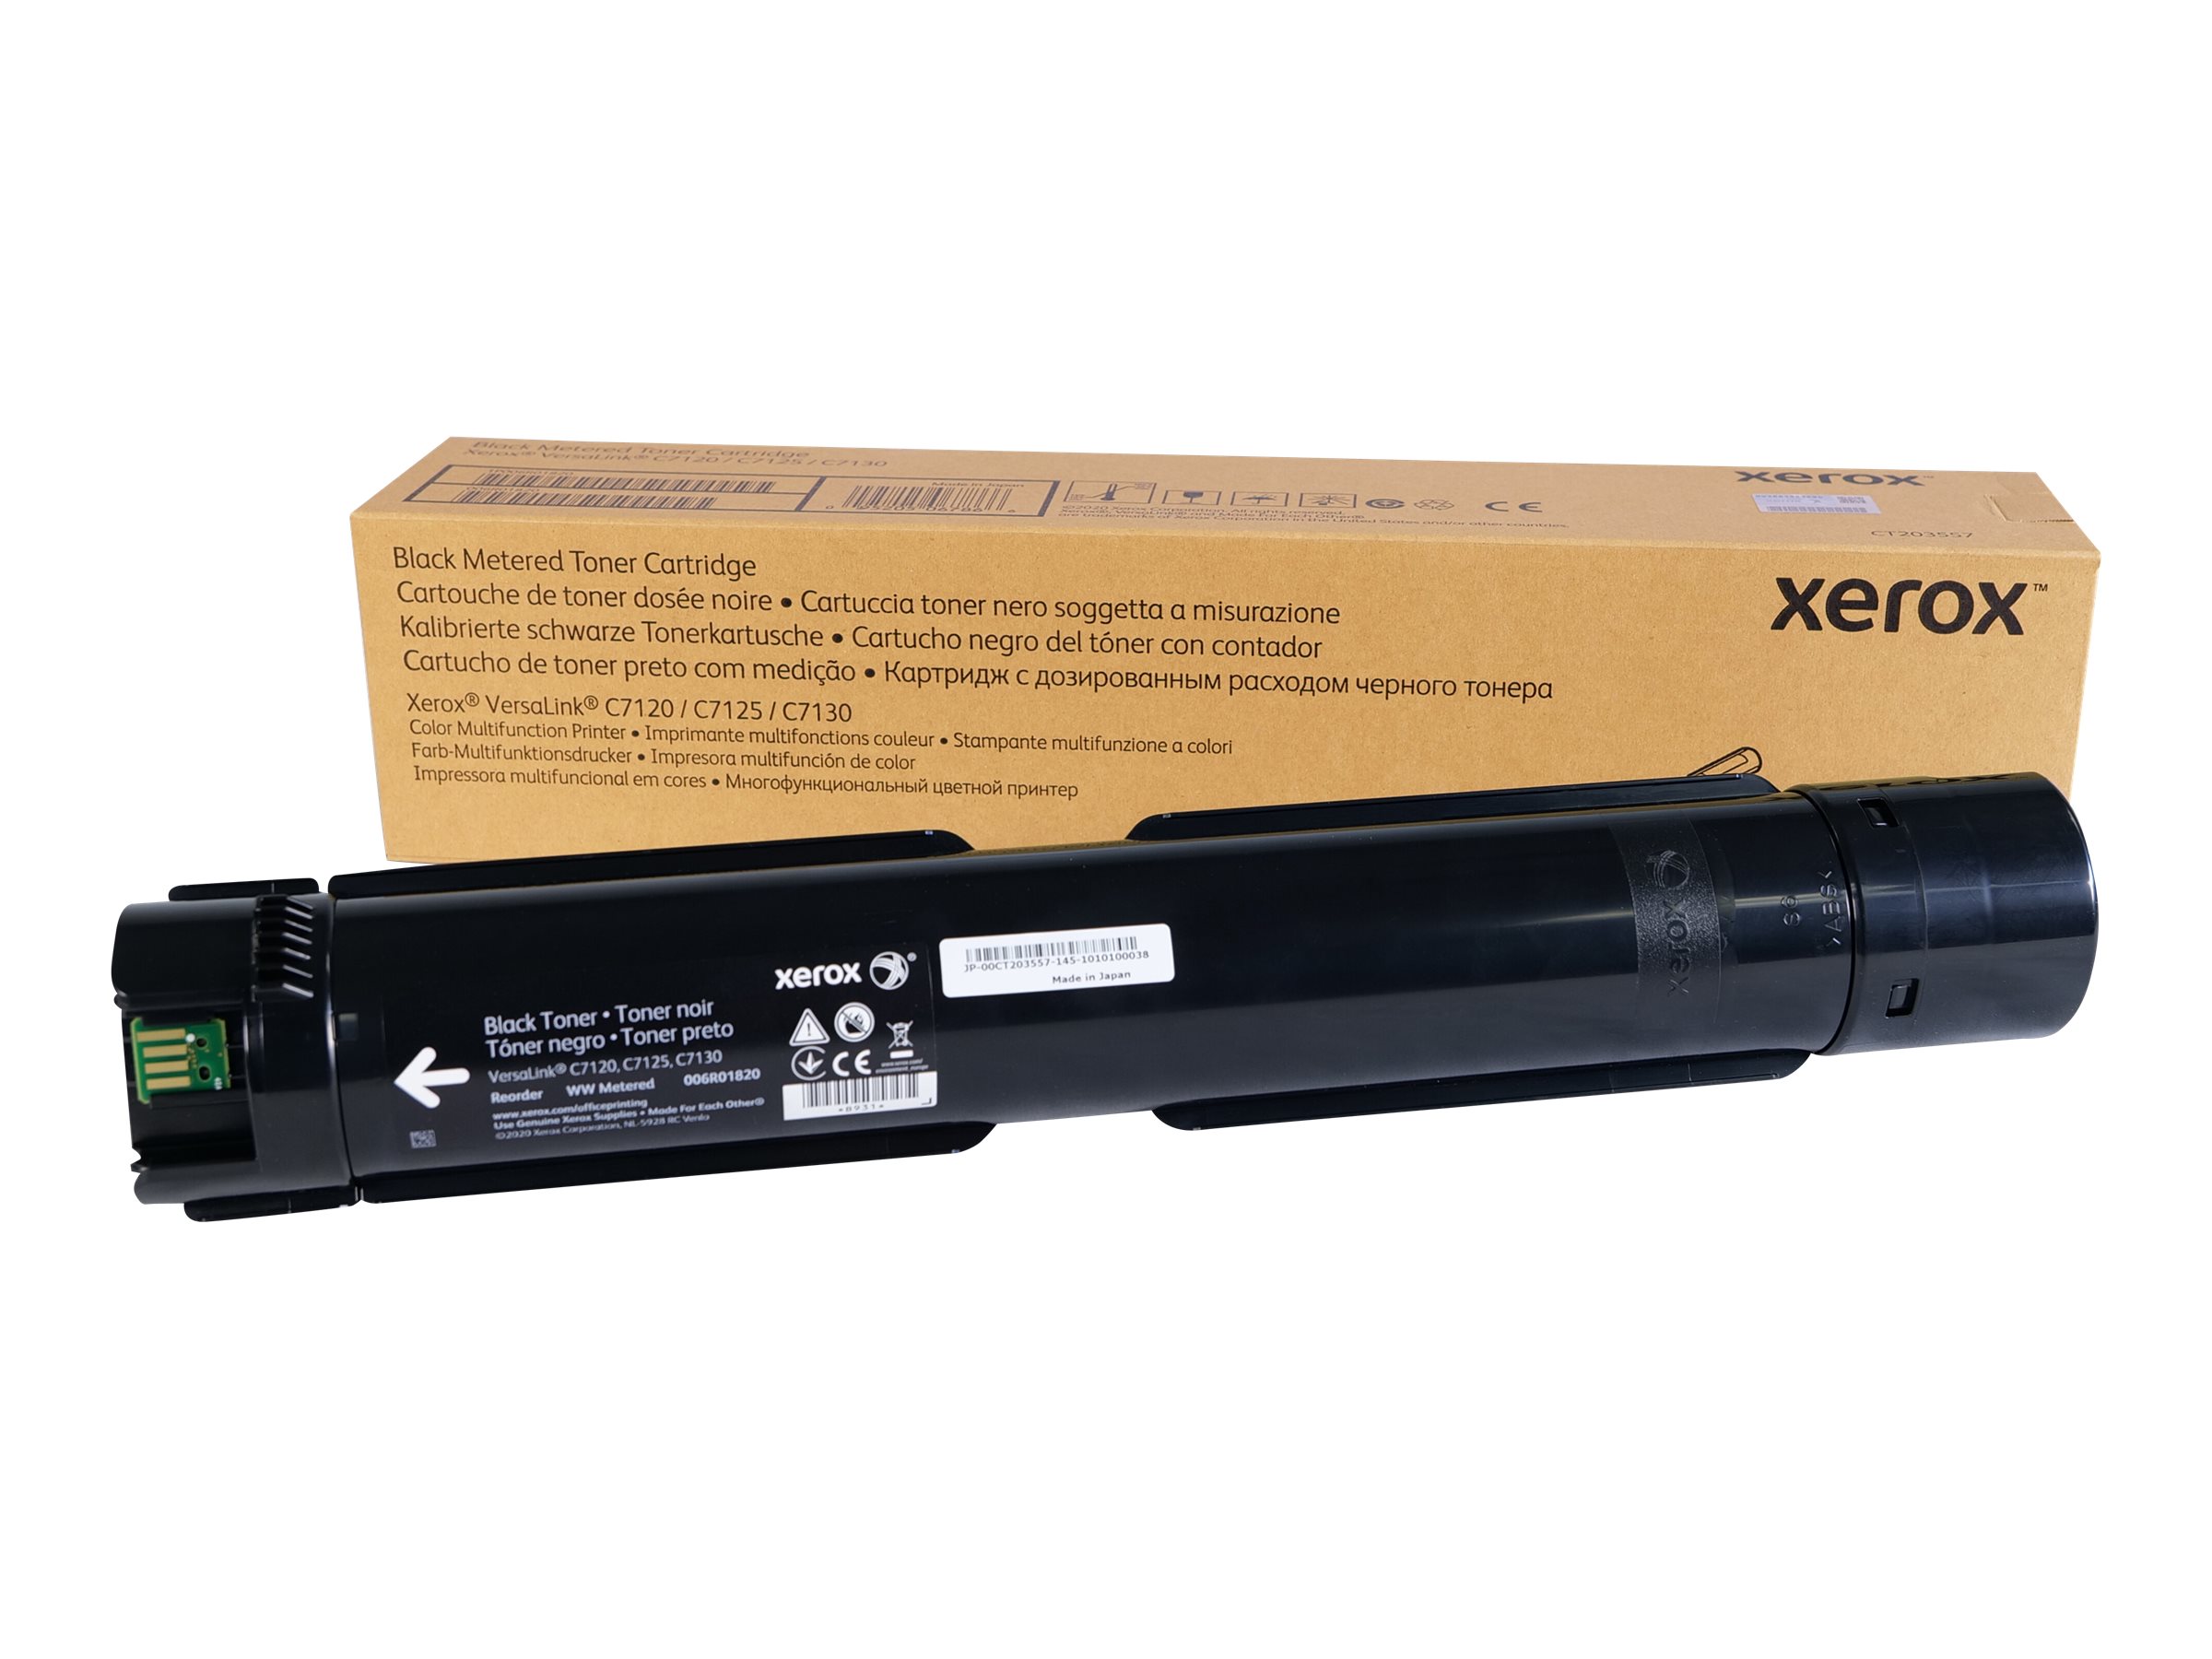 XEROX - Schwarz - original - Tonerpatrone - für VersaLink C7000/DN, C7000/N, C7